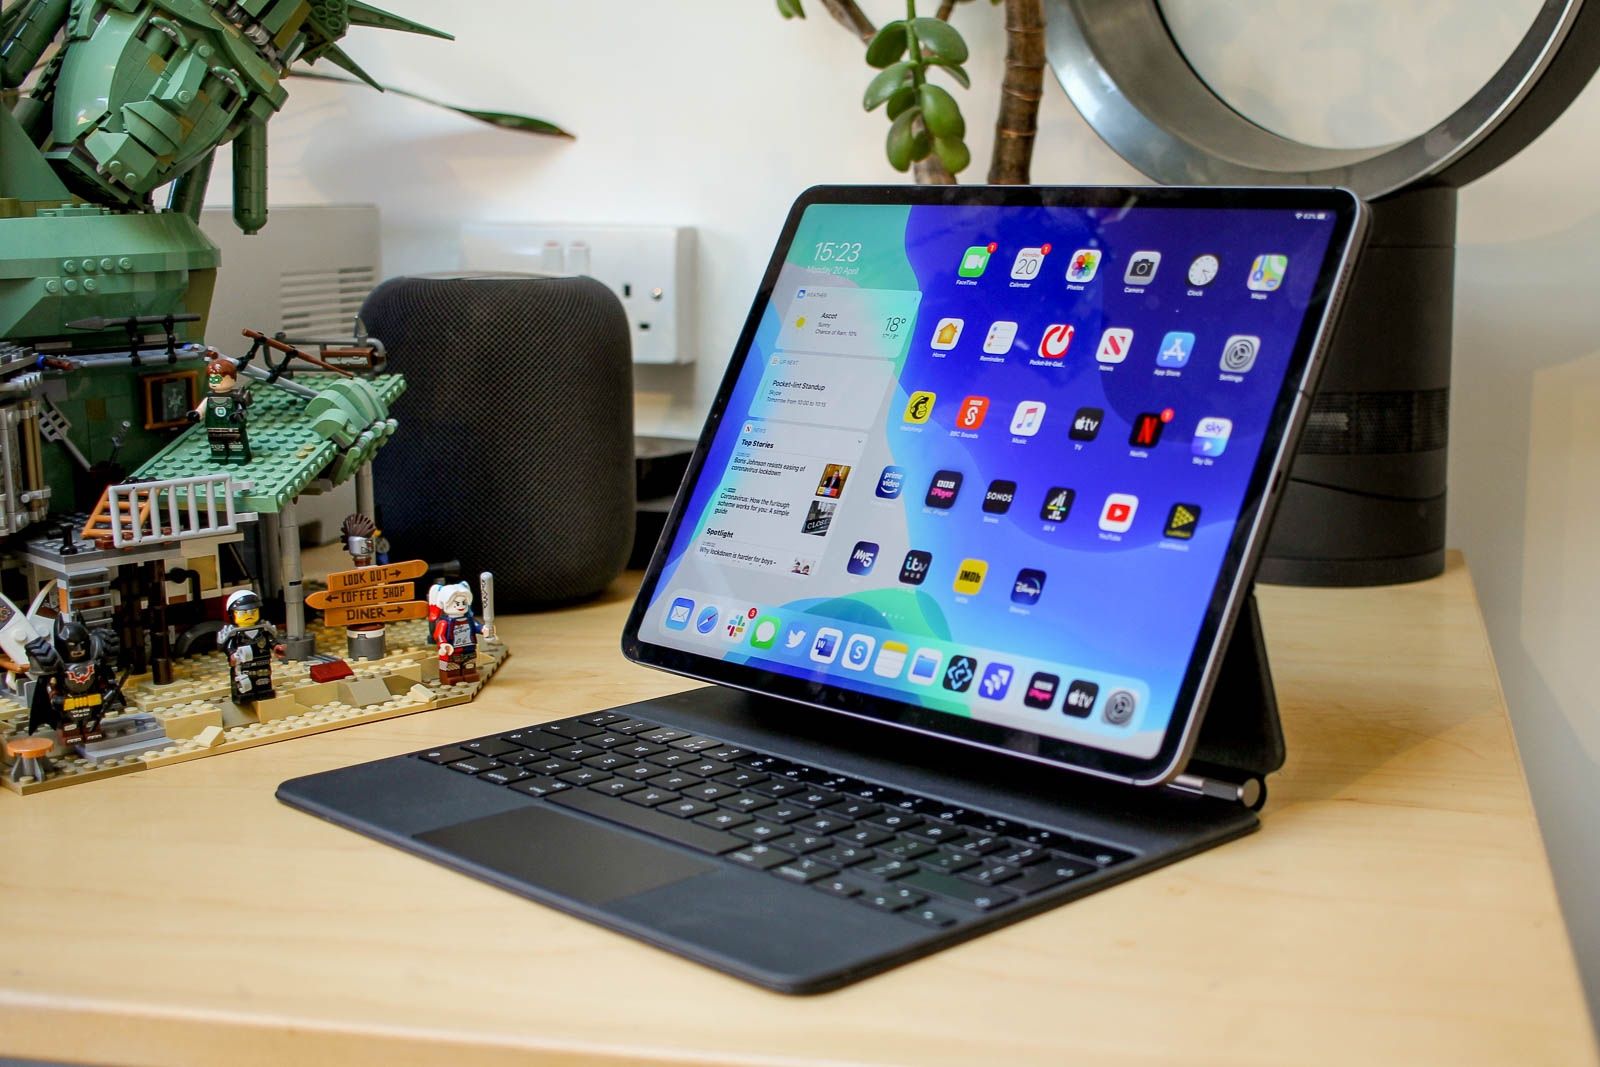 Les 6 meilleurs claviers iPad pour améliorer votre productivité - ZDNet